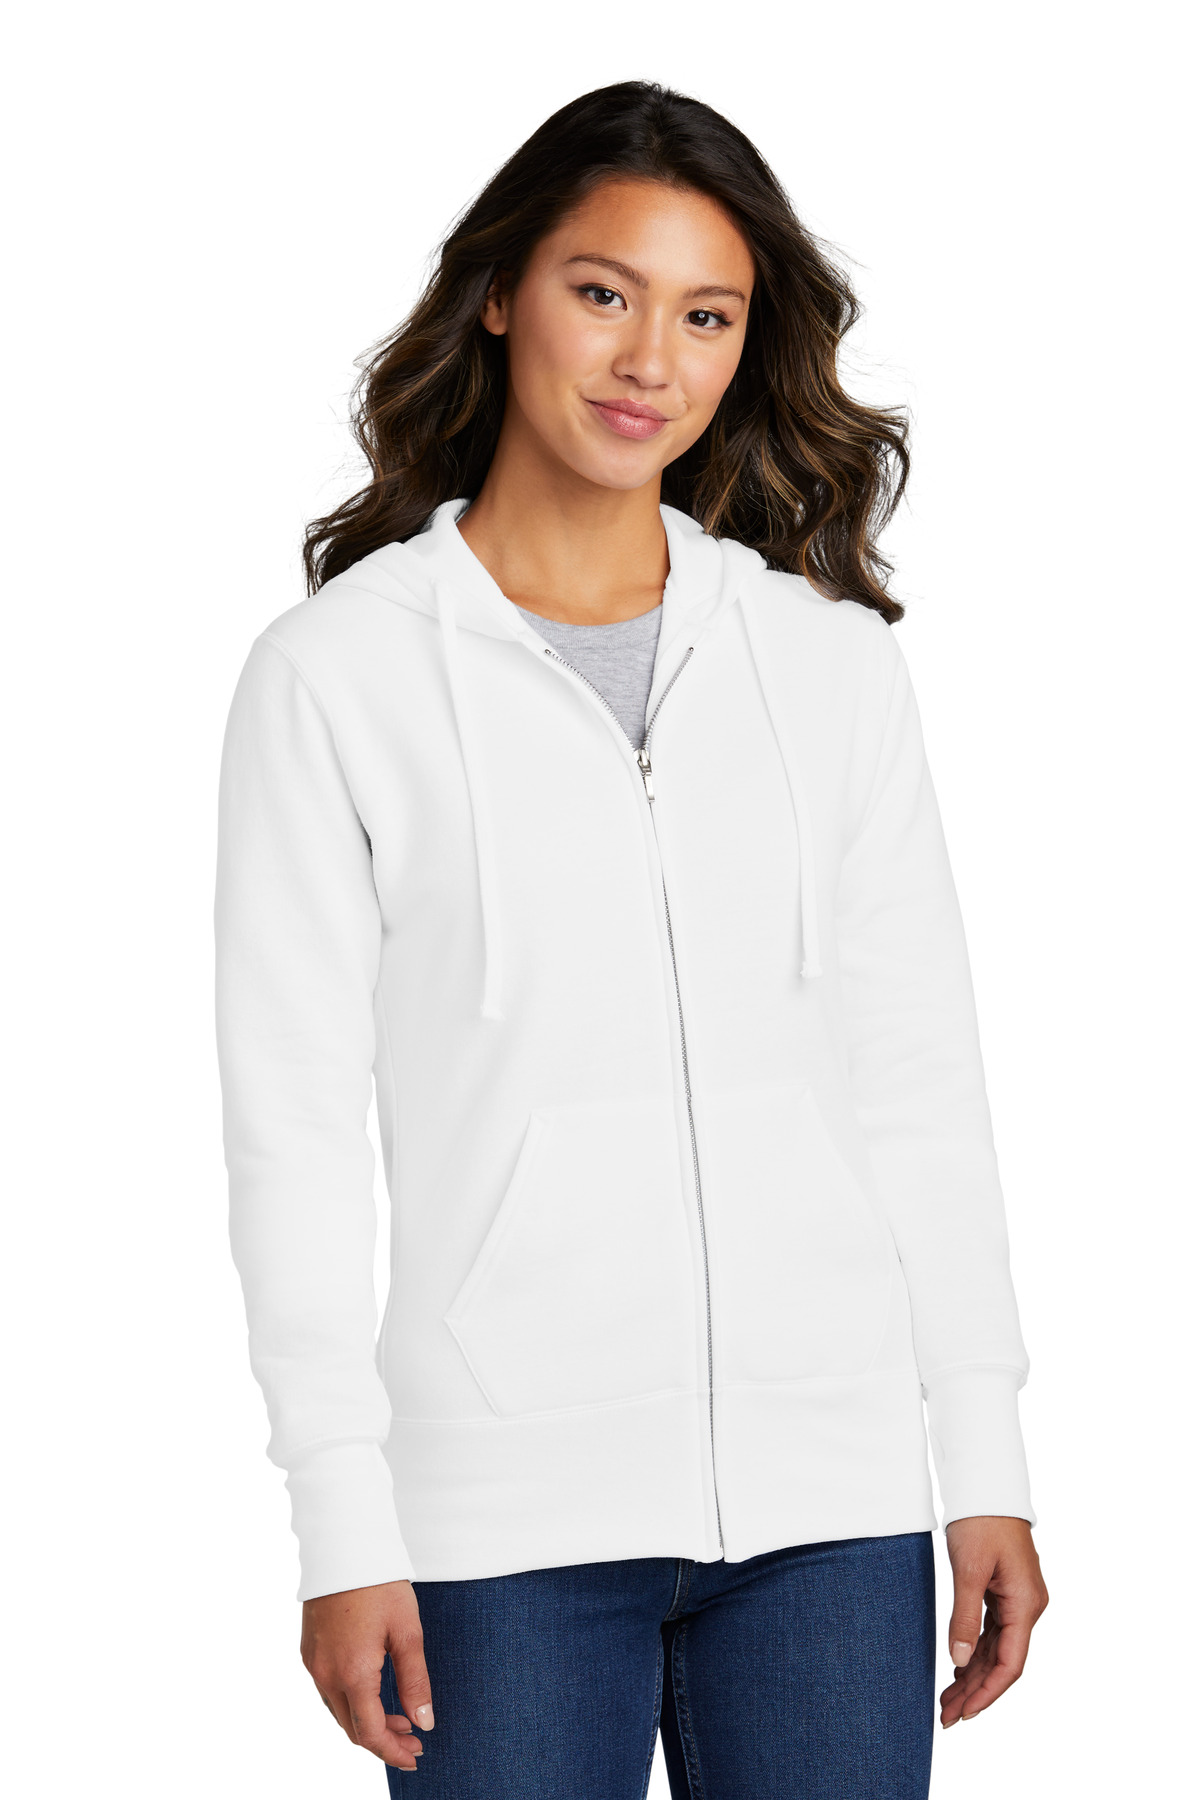 Port & Company Ladies Sweatshirts & Fleece for Hospitality ® Ladies Core Fleece Full-Zip Hooded Sweatshirt.-Port & Company